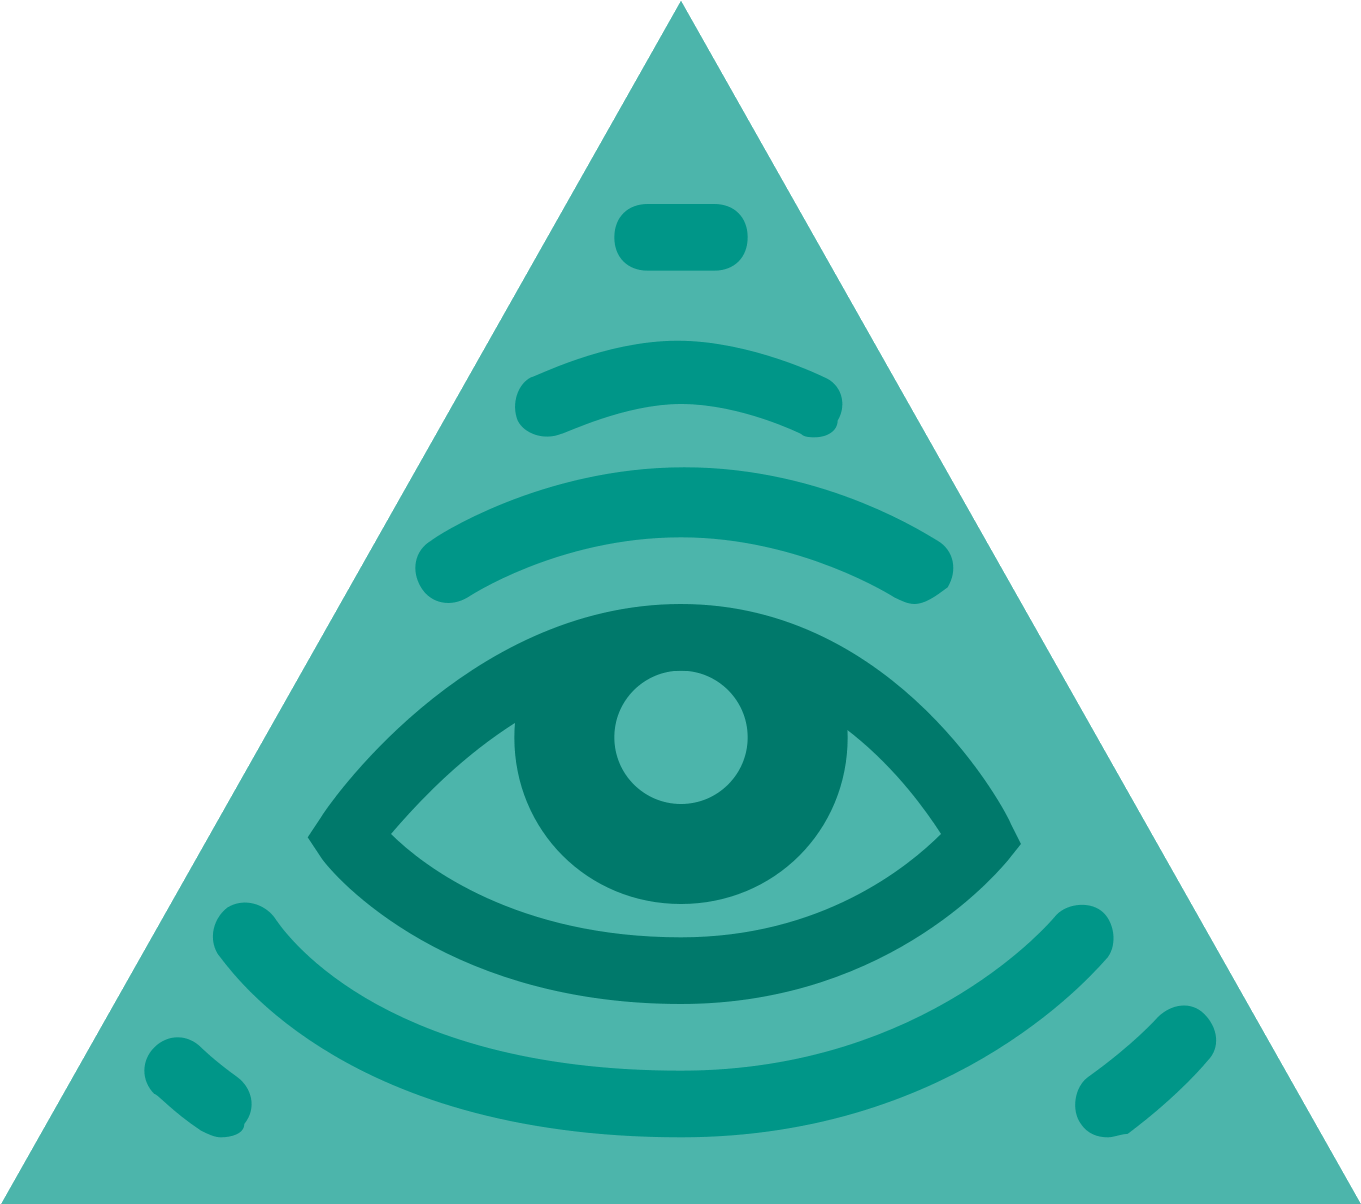 Illuminati Eye Symbol PNG